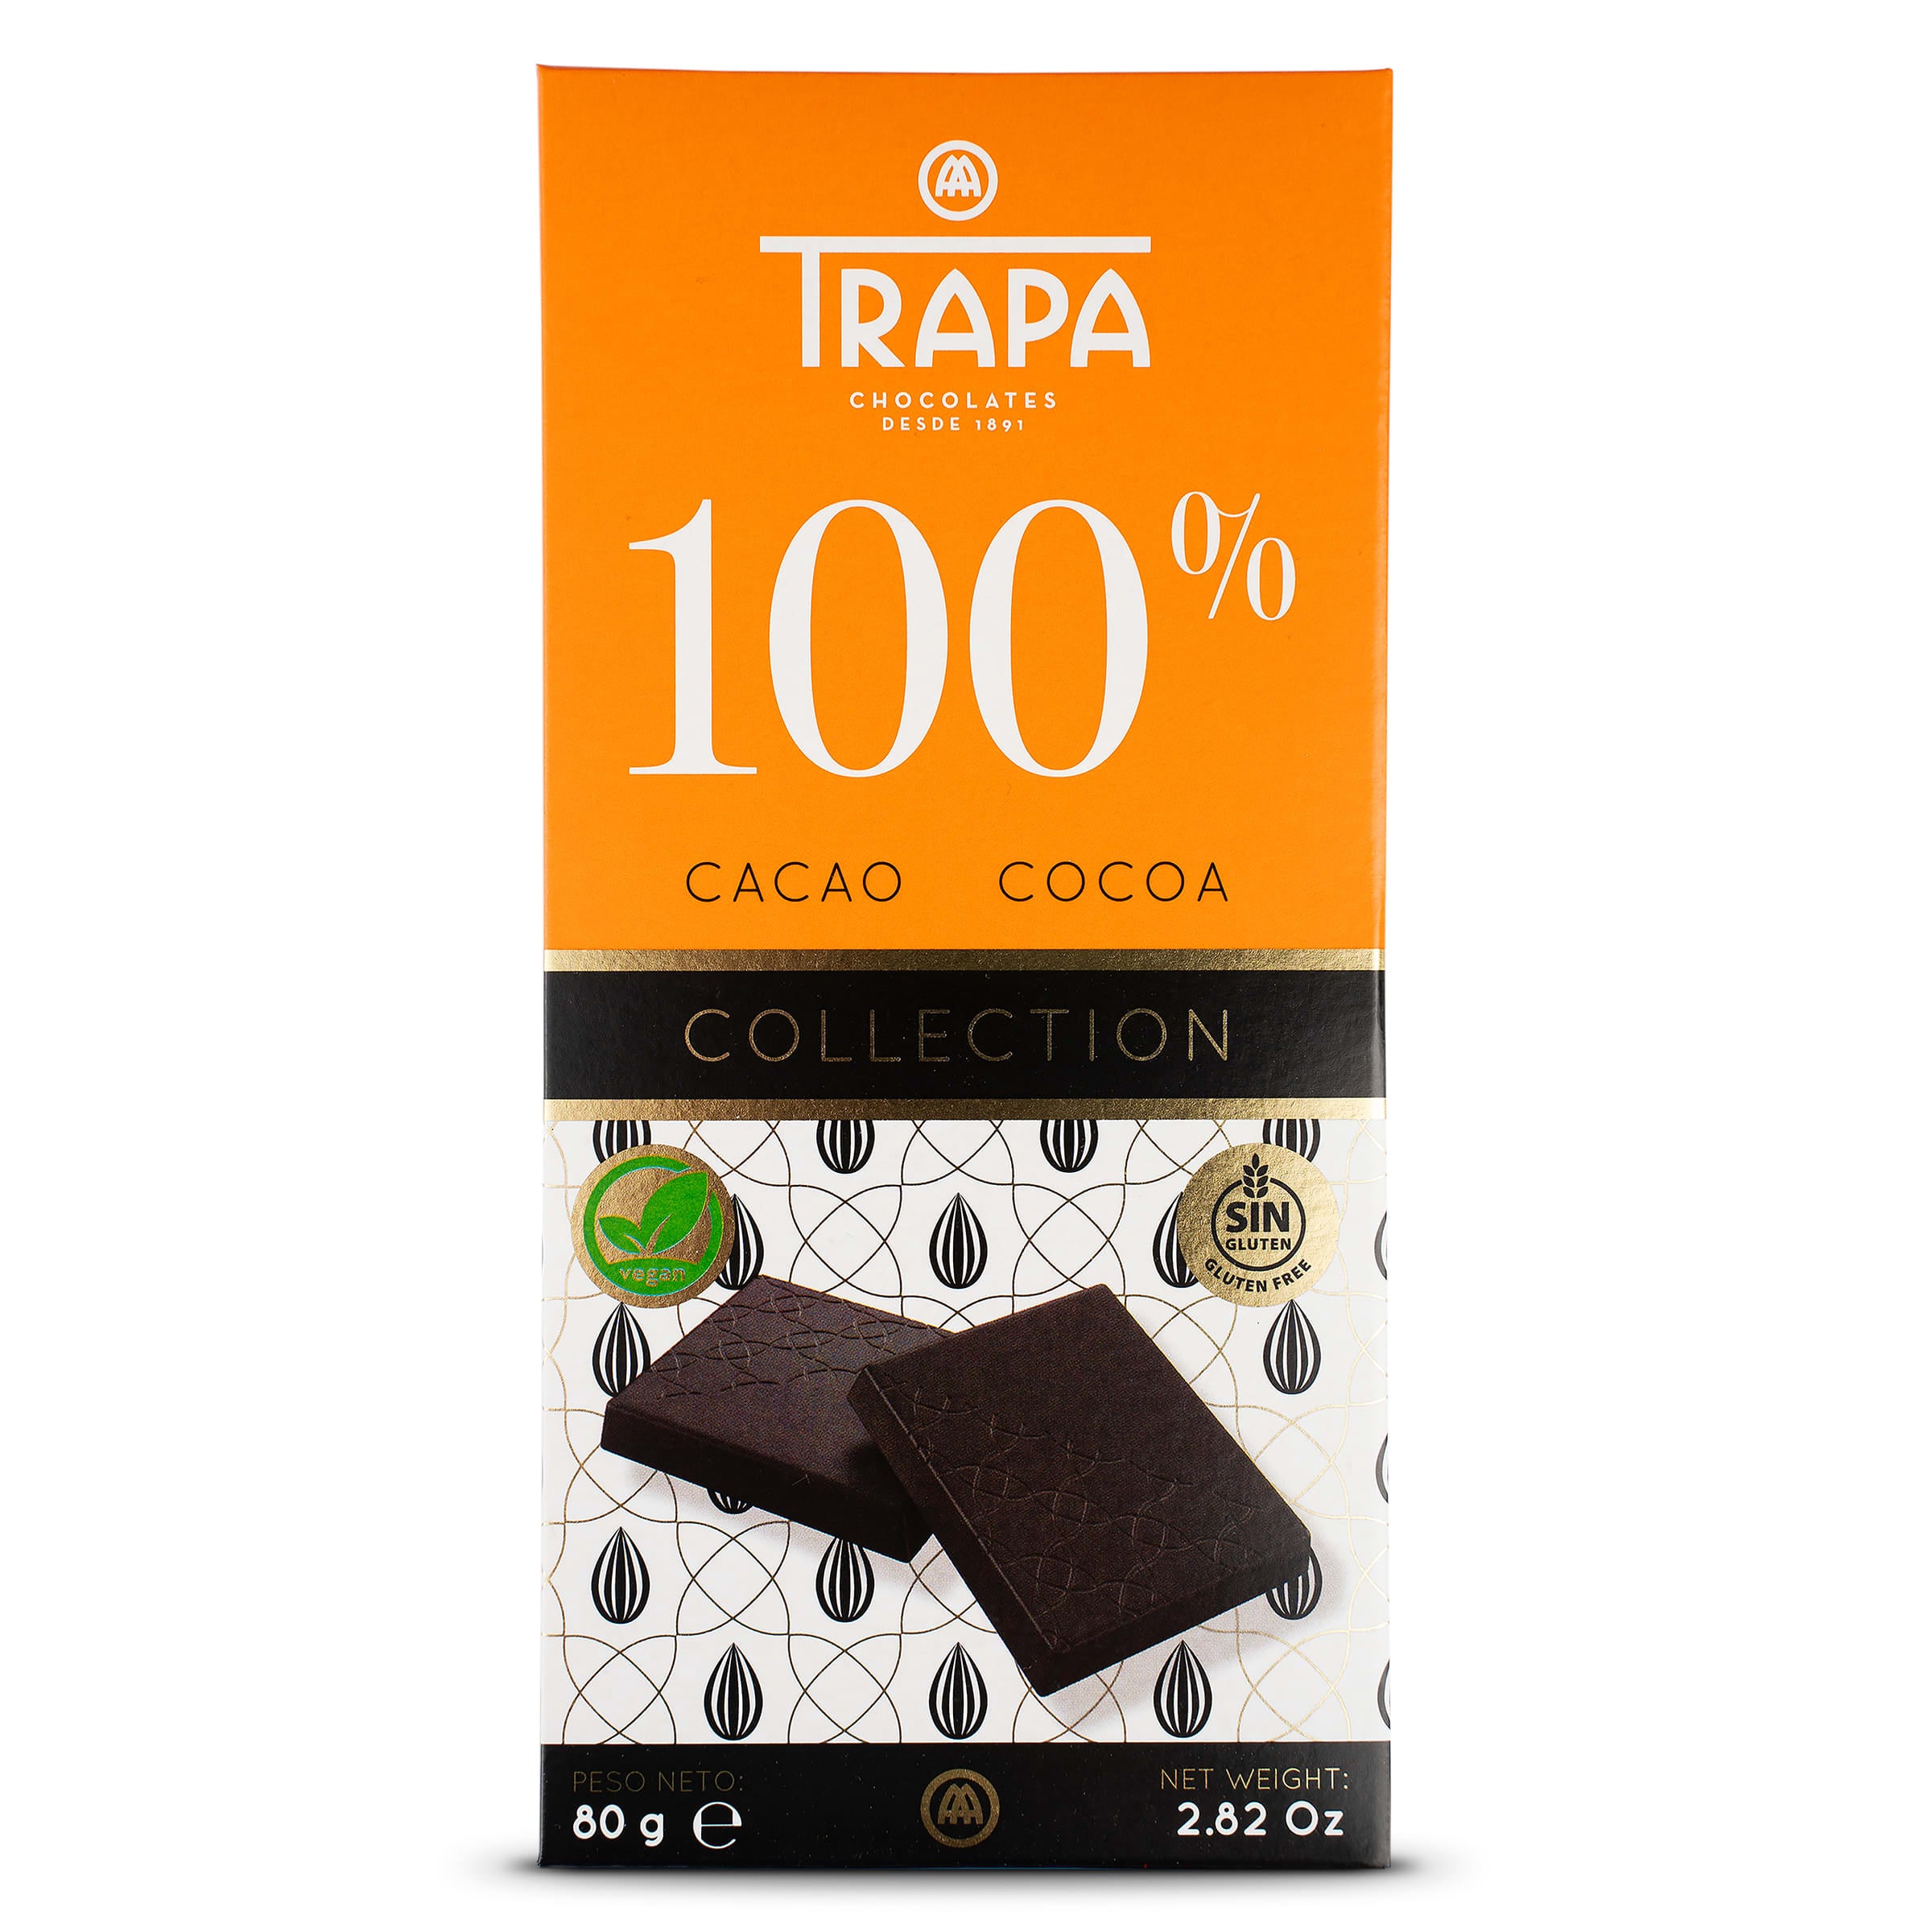 Chocolate negro 85% 0% azúcares añadidos y sin gluten tableta 100